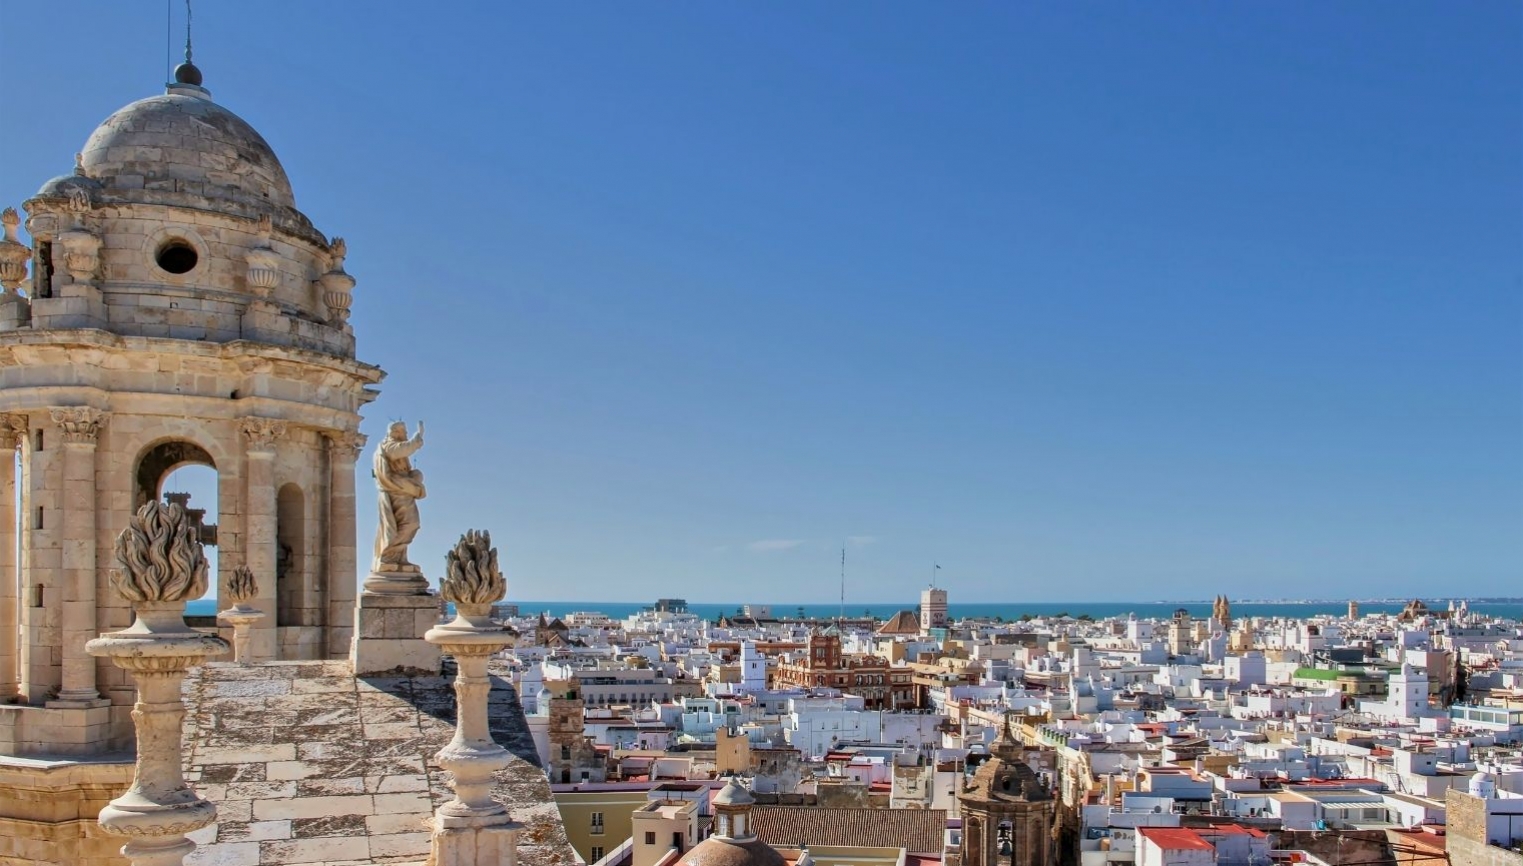 Viaje Semana Santa Pueblos Blancos y Rincones de Cádiz 469€ - foto 1/1